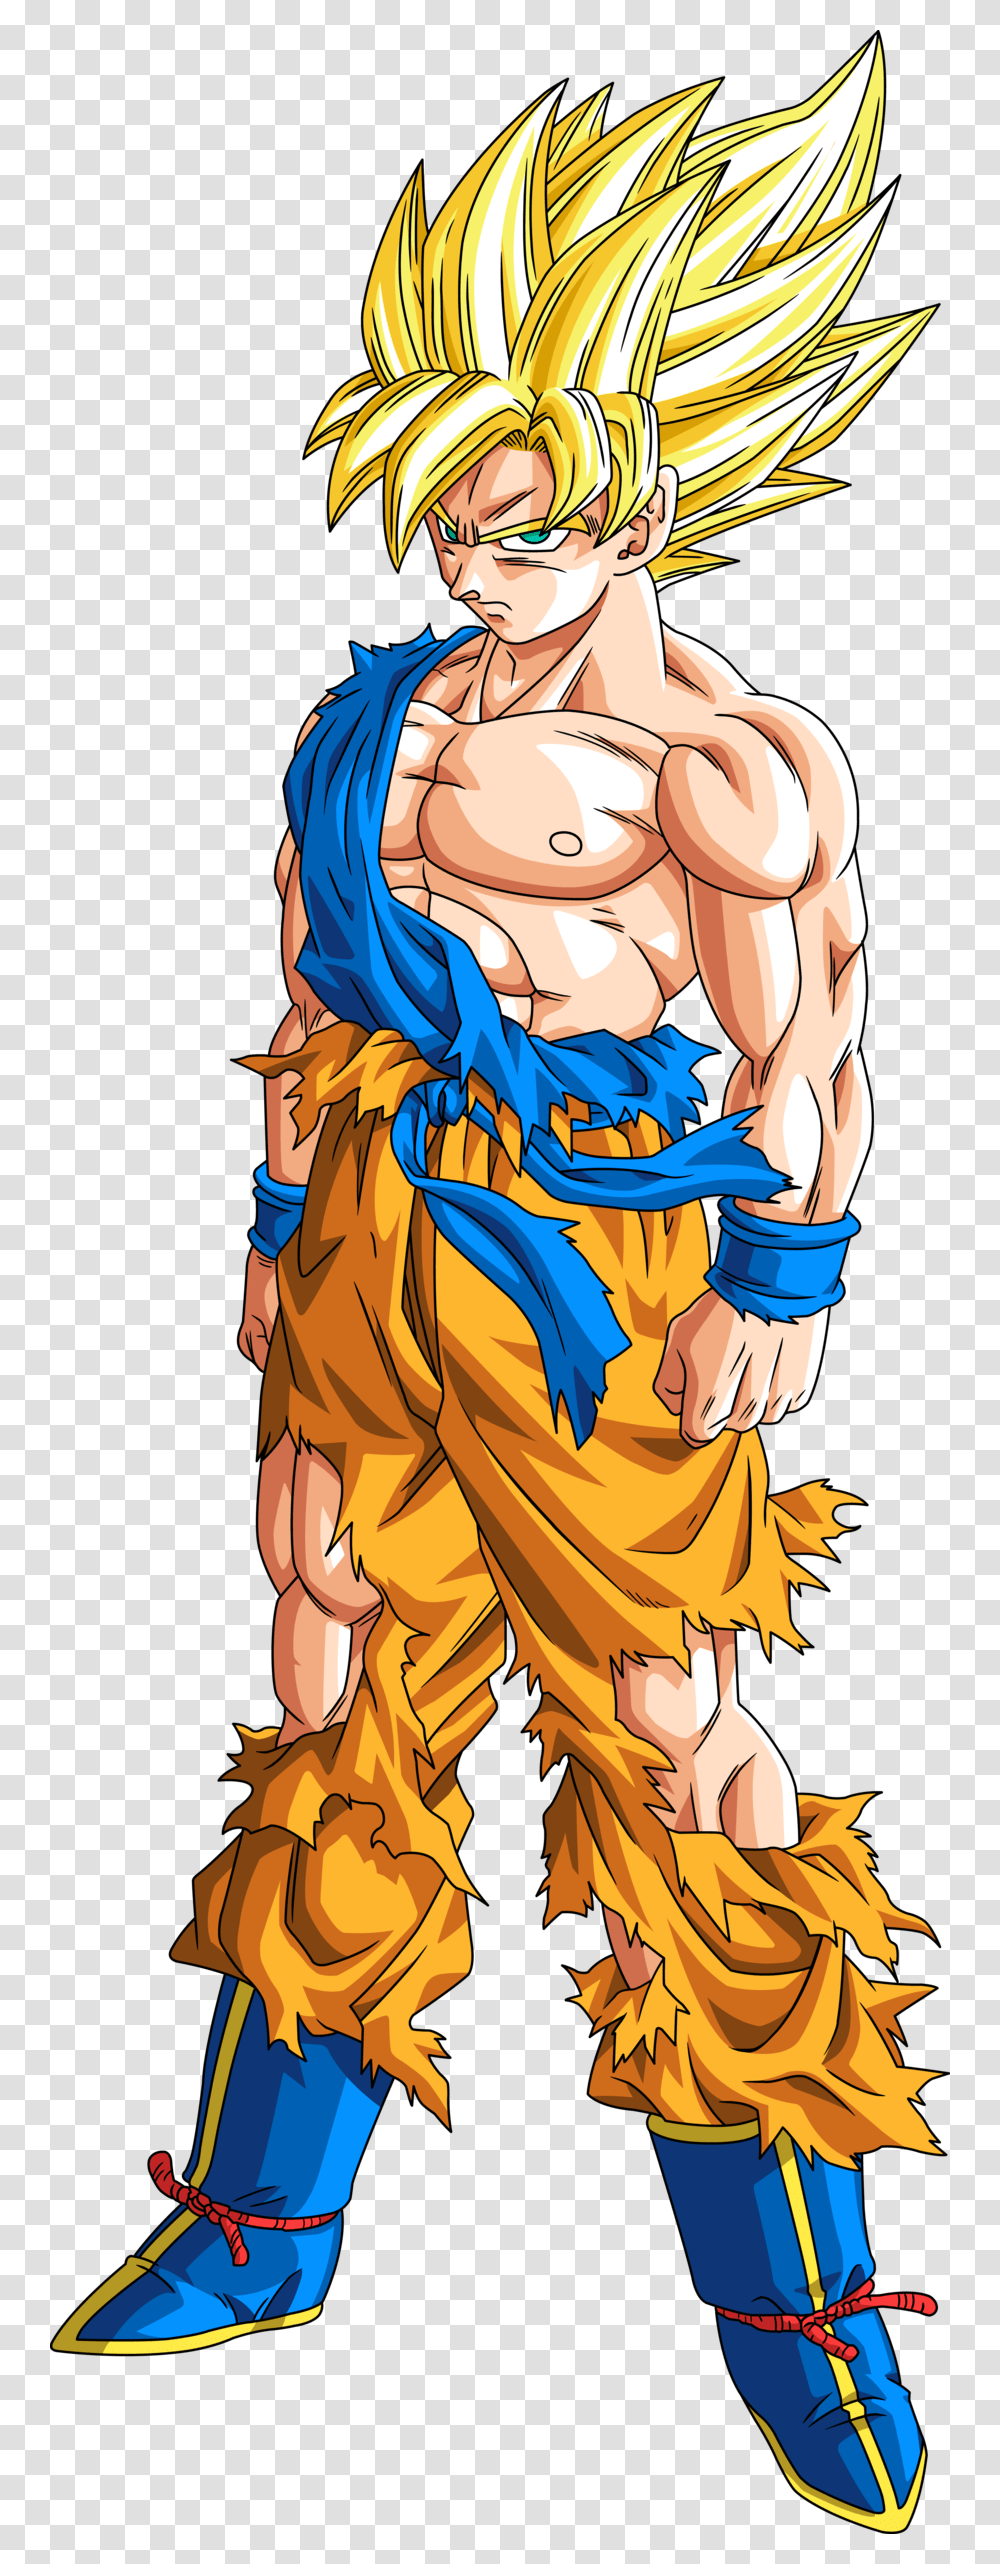 Goku Spirit Bomb Full Power Frieza Ssj1 Goku Goku Full Body Super Saiyan, Person, Comics, Book Transparent Png